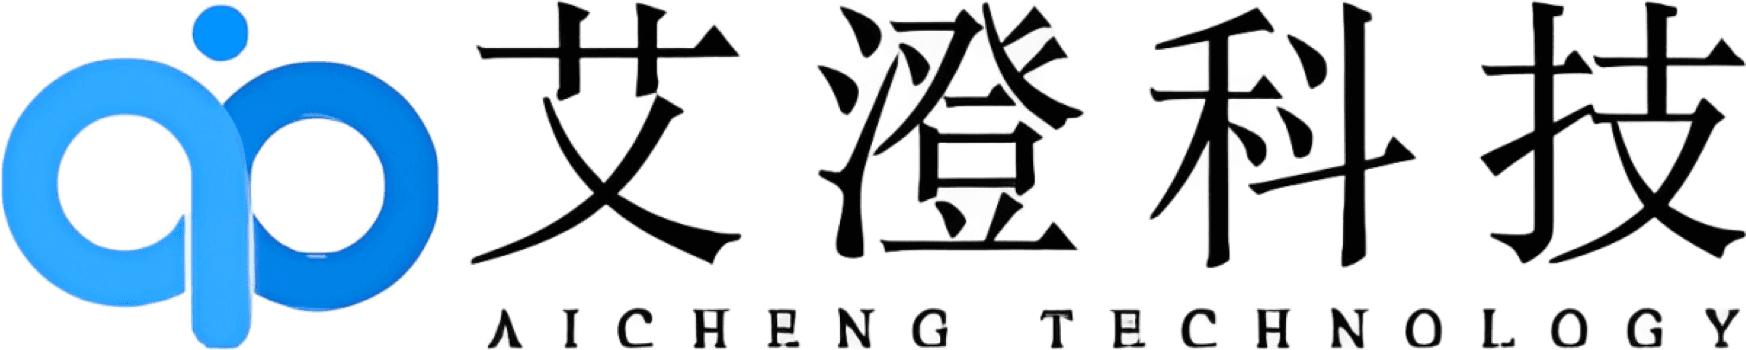 AiCheng Technology